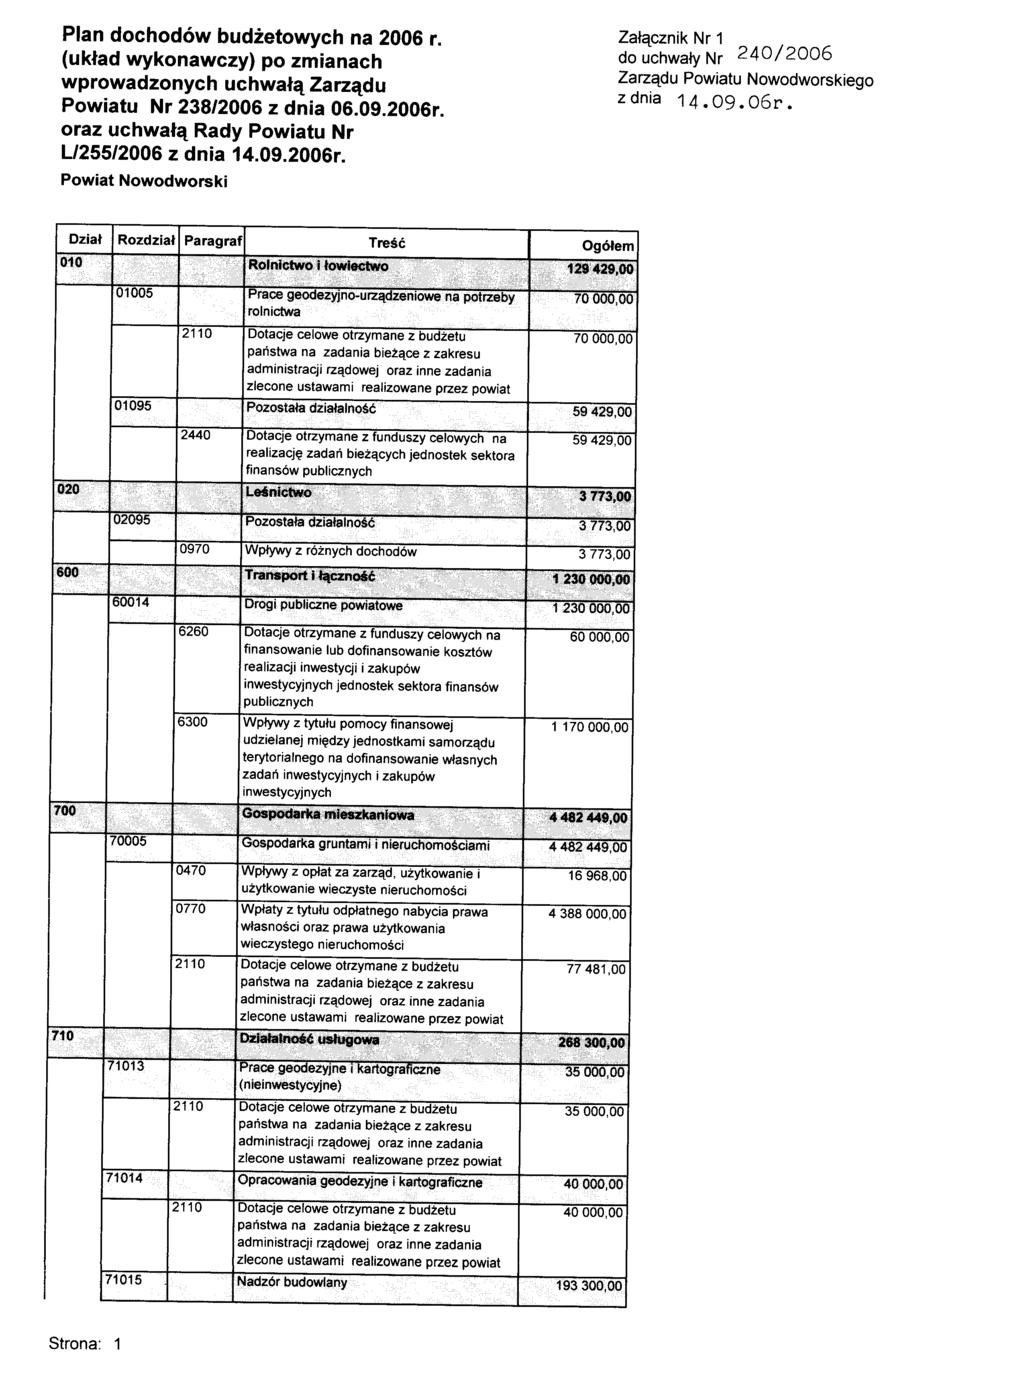 Plan dochodów na 2006 r. (układ wykonawczy) po zmianach wprowadzonych uchwałą Zarządu Powiatu Nr 238/2006 z dnia 06.09.2006r.